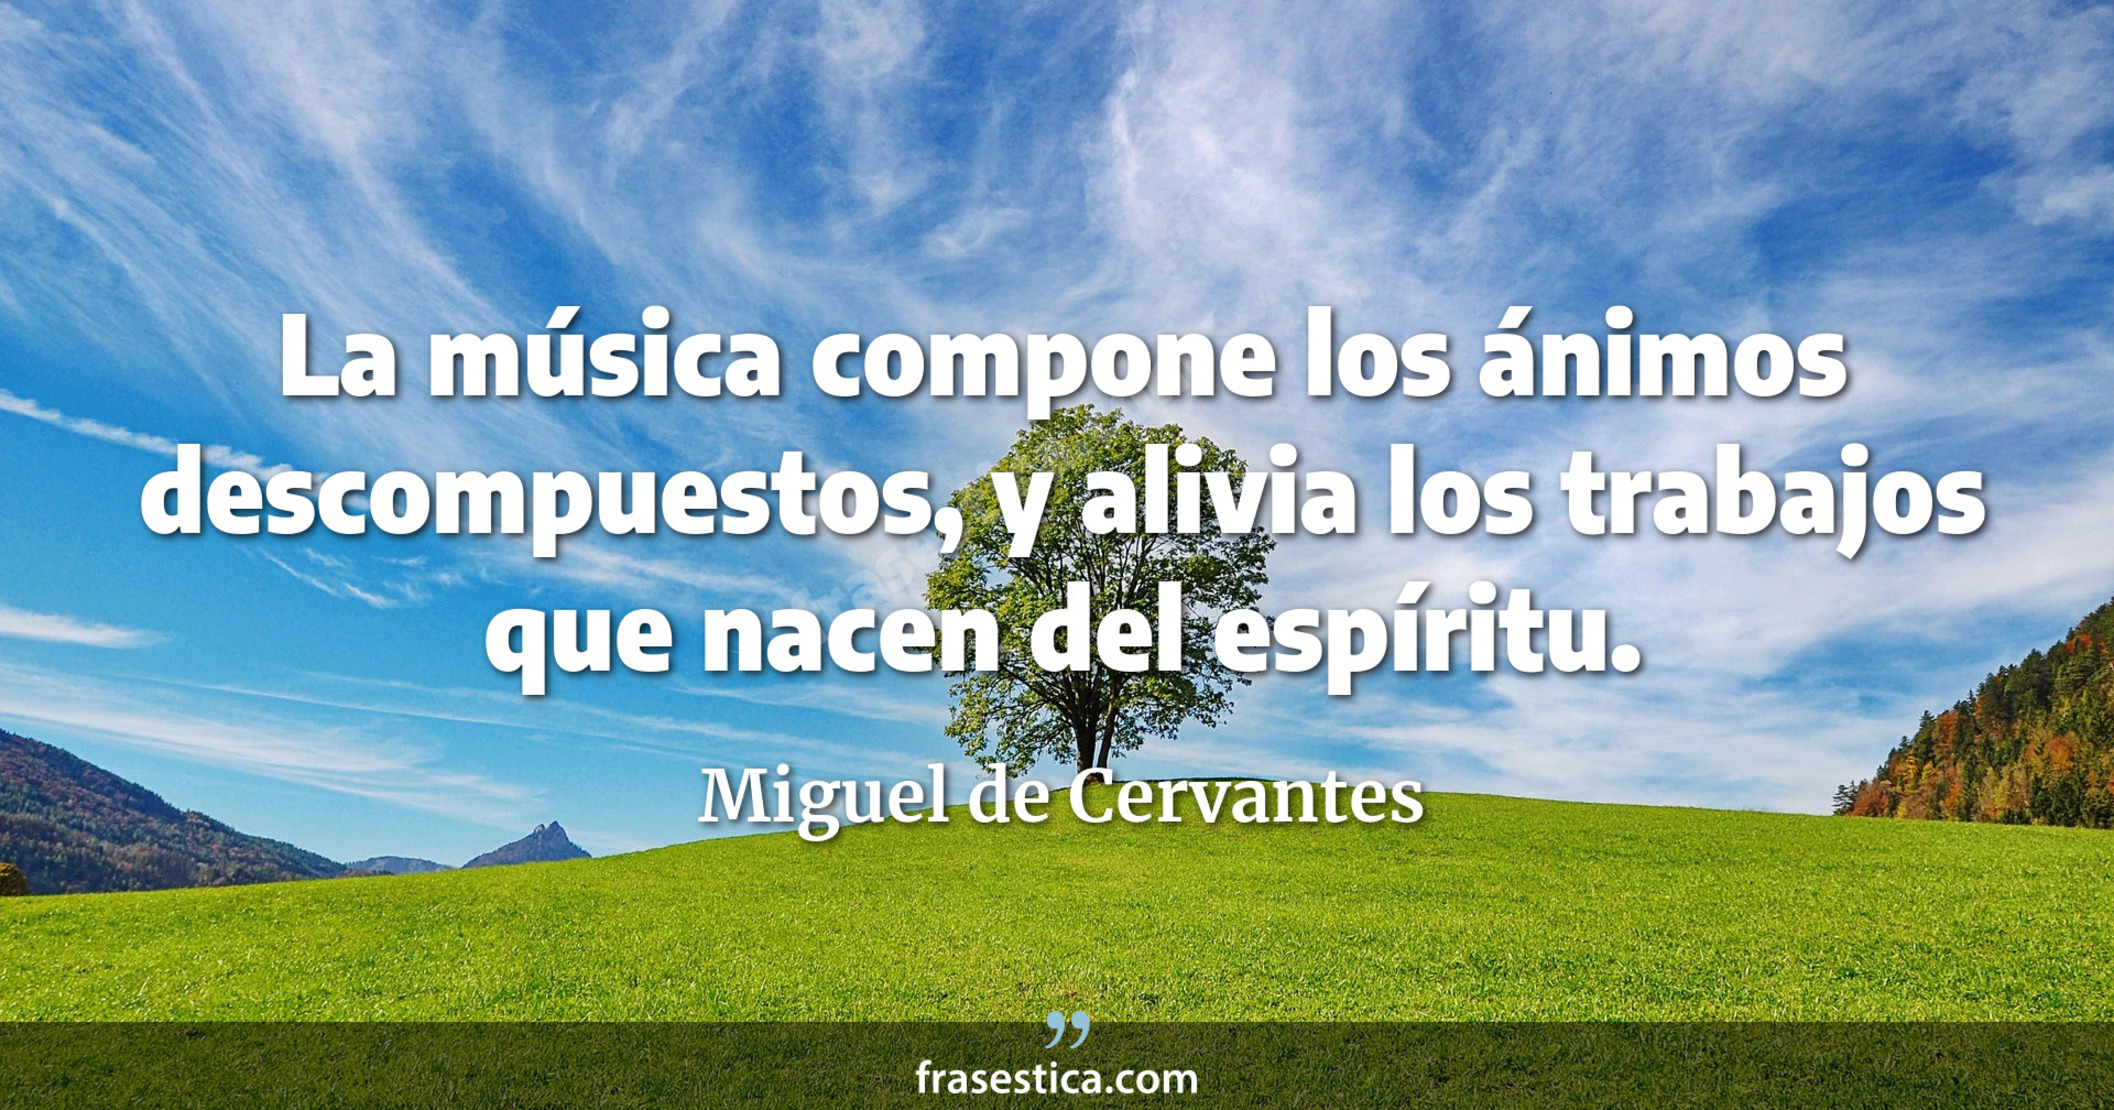 La música compone los ánimos descompuestos, y alivia los trabajos que nacen del espíritu. - Miguel de Cervantes